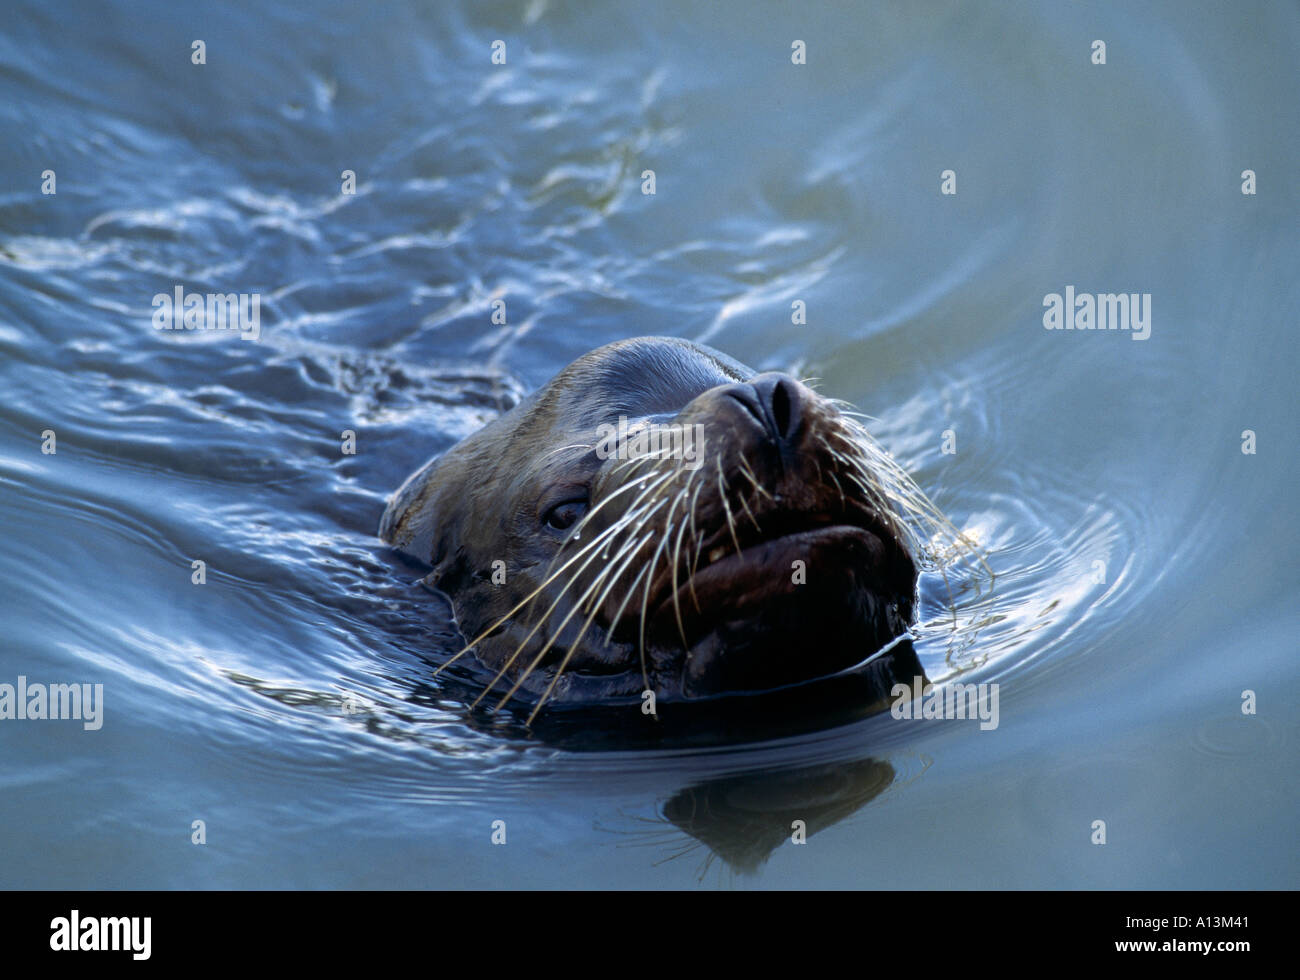 CA San Francisco Fisherman s Wharf Sea Lion natation avec nez au-dessus de l'eau Banque D'Images